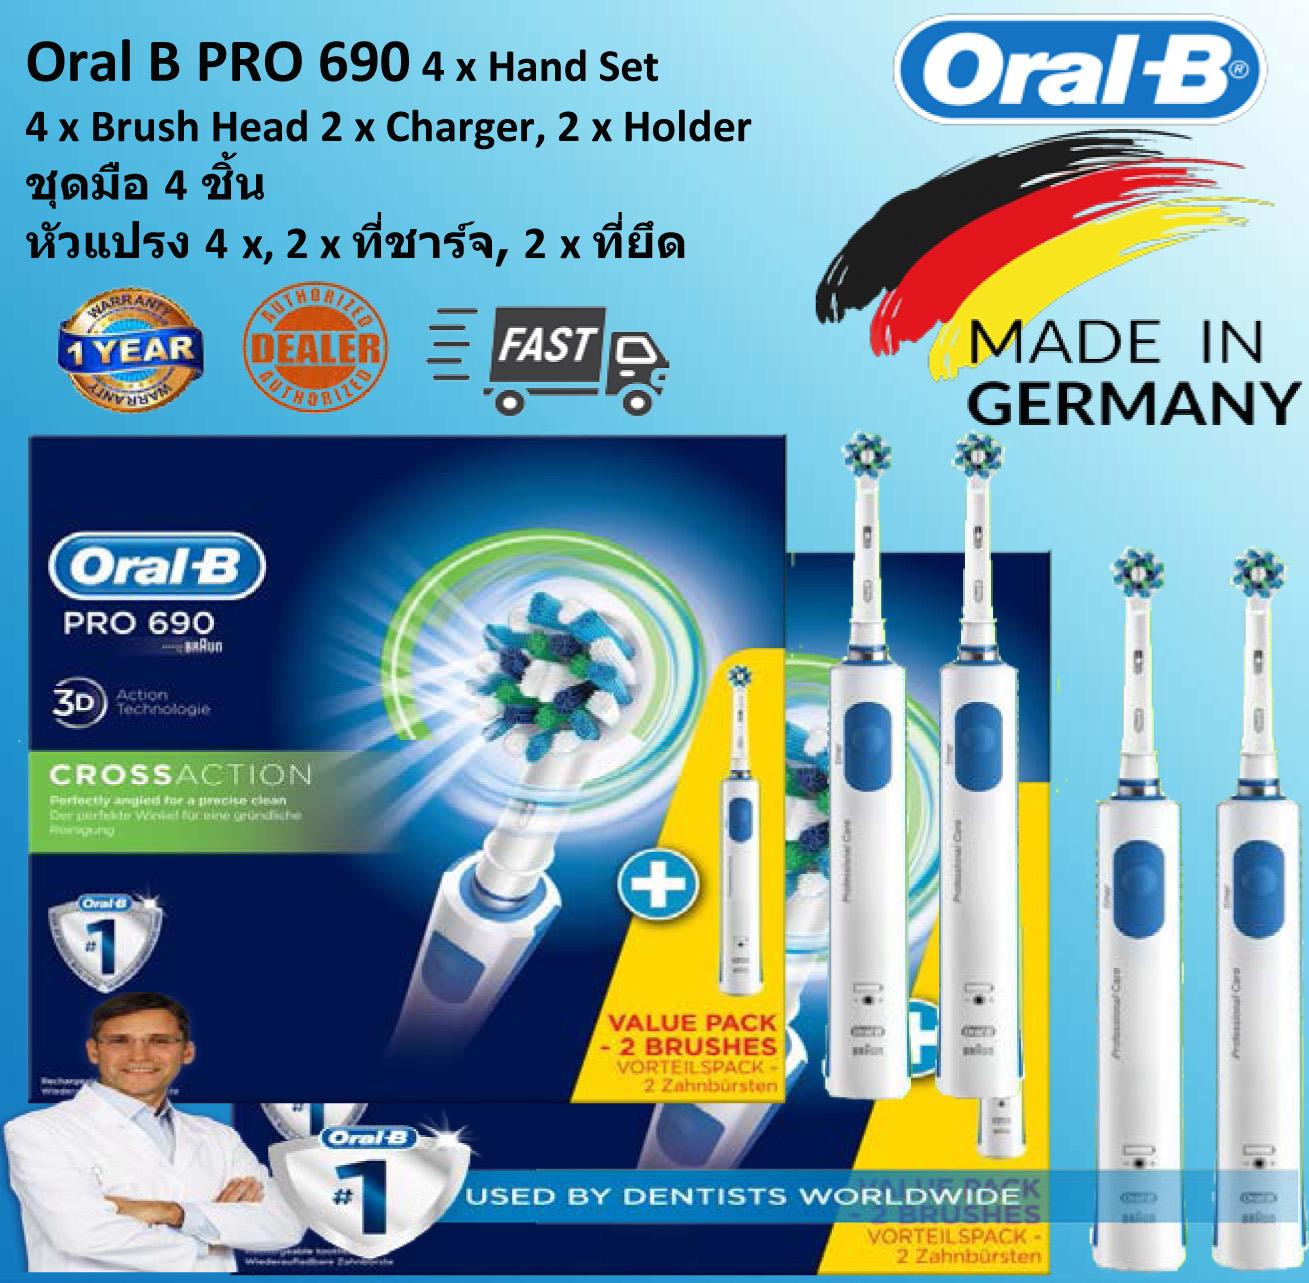 แปรงสีฟันไฟฟ้าเพื่อรอยยิ้มขาวสดใส พิษณุโลก Oral B PRO 690 Electric CrossAction Rechargeable Toothbrush Bonus Pack  Oral B PRO 690 ชุดโบนัสแปรงสีฟันไฟฟ้า CrossAction แบบชาร์จได้